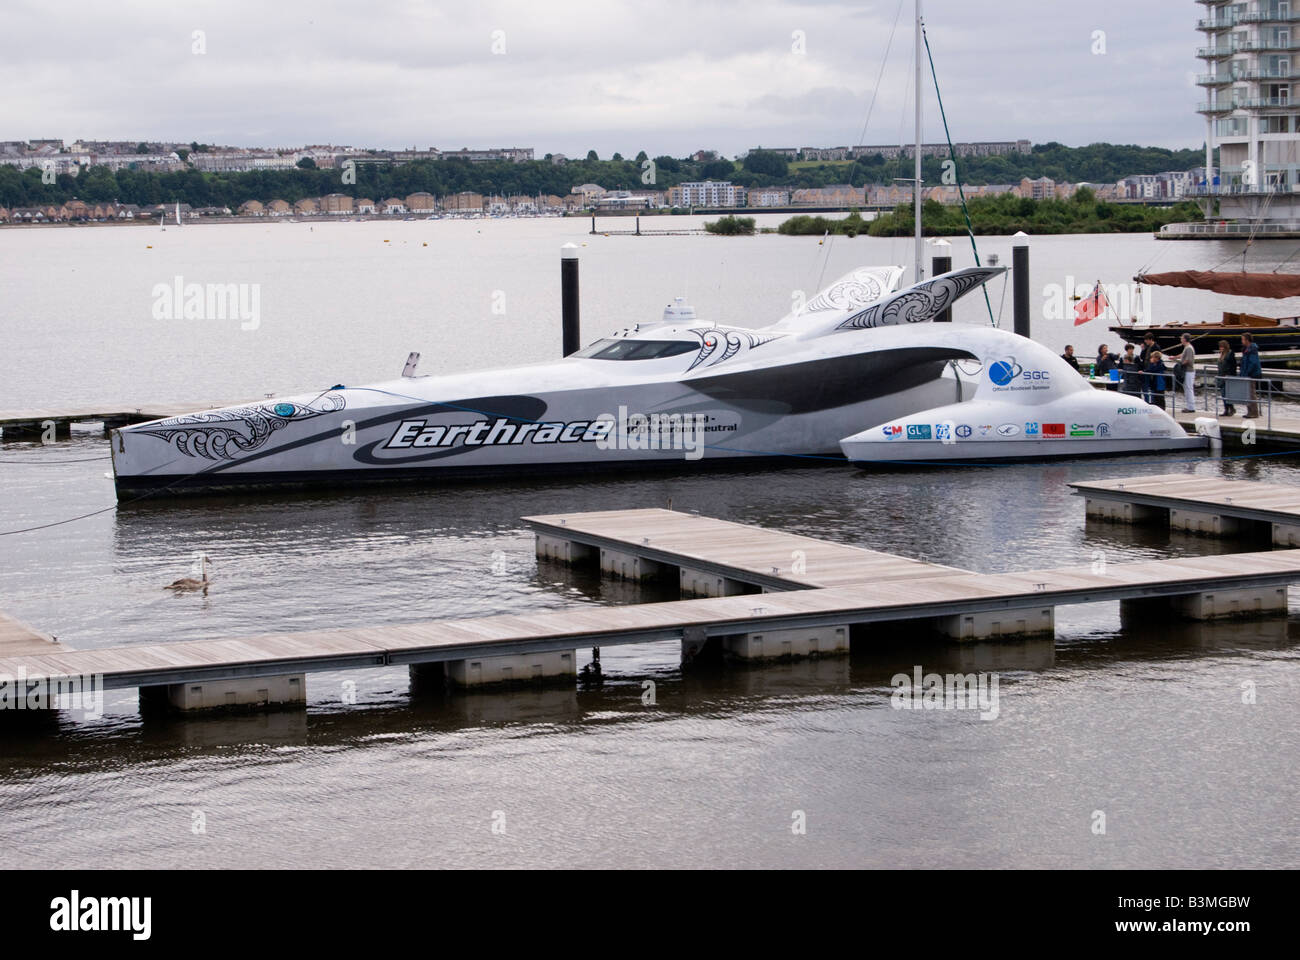 Earthrace speed boat Foto de stock